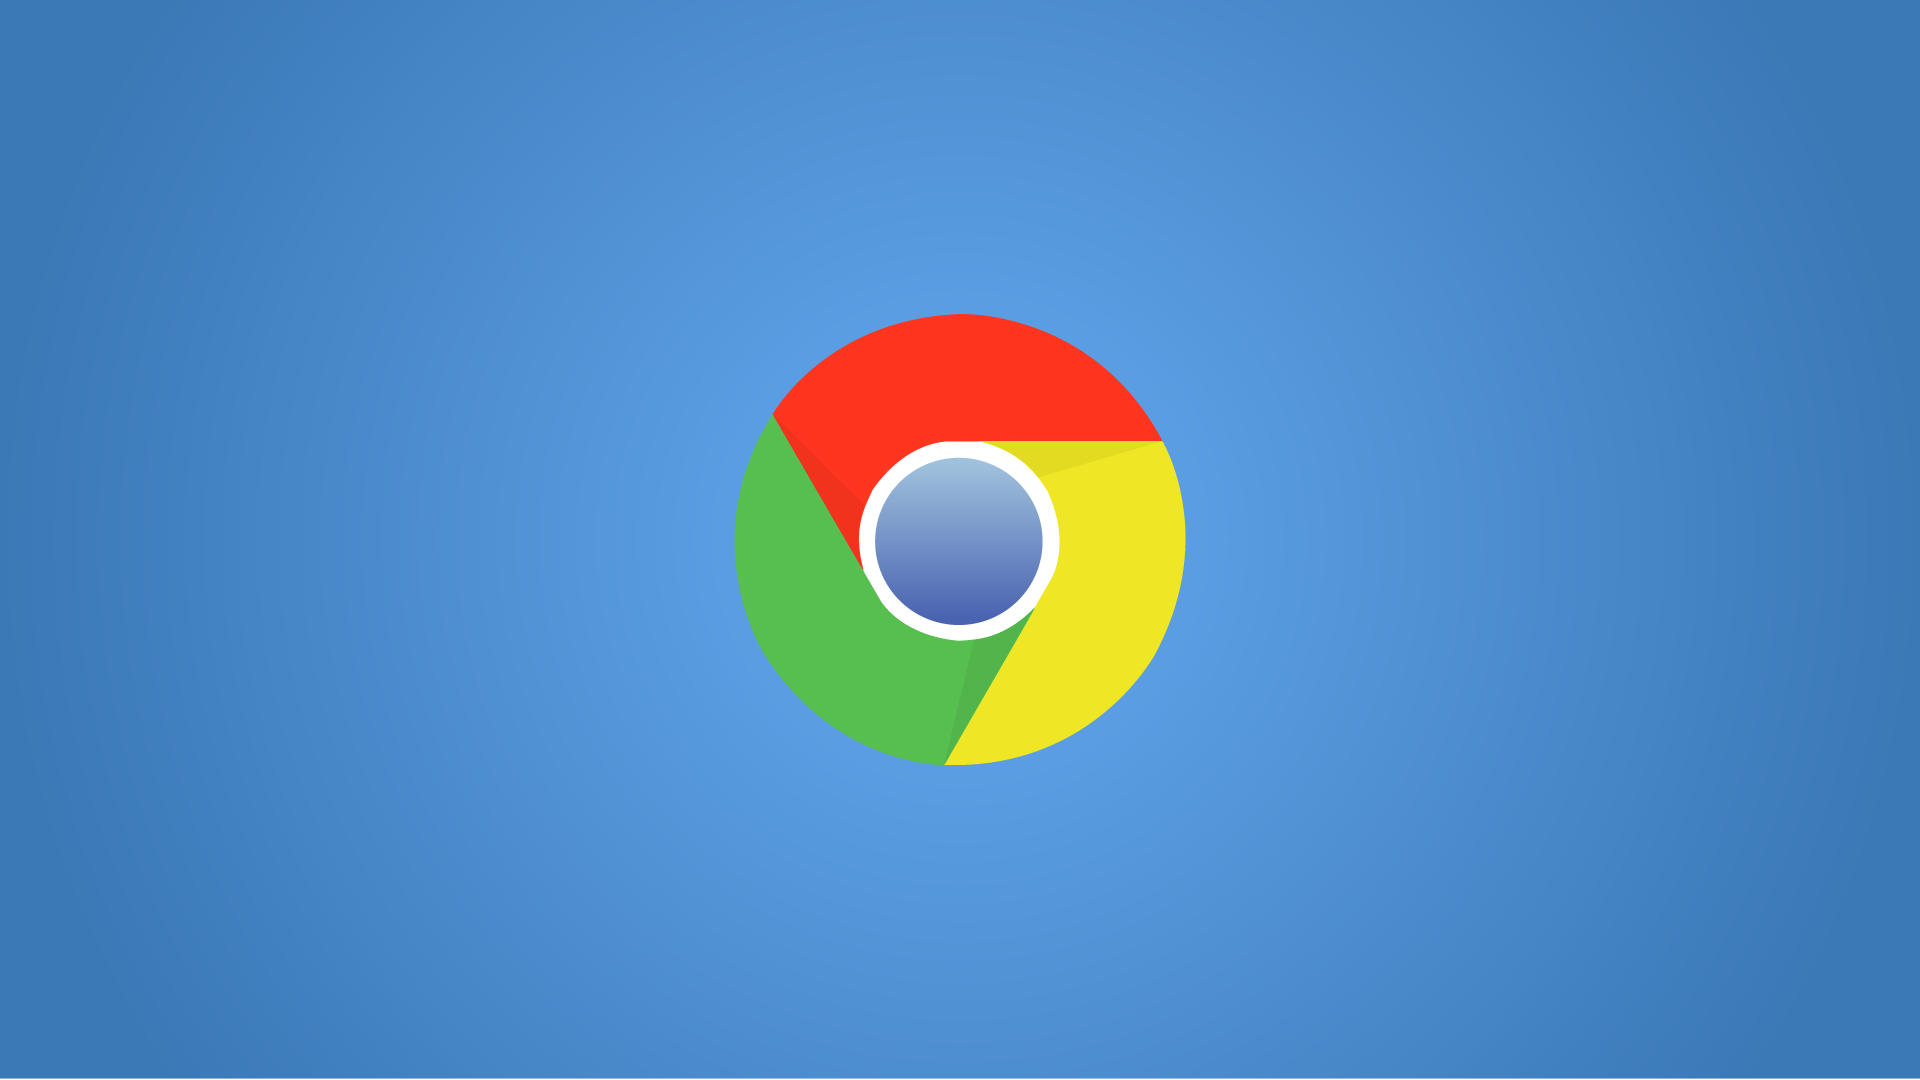 Google Chrome 88.0.4324.150 For Windows 64-Bit (Offline Installer